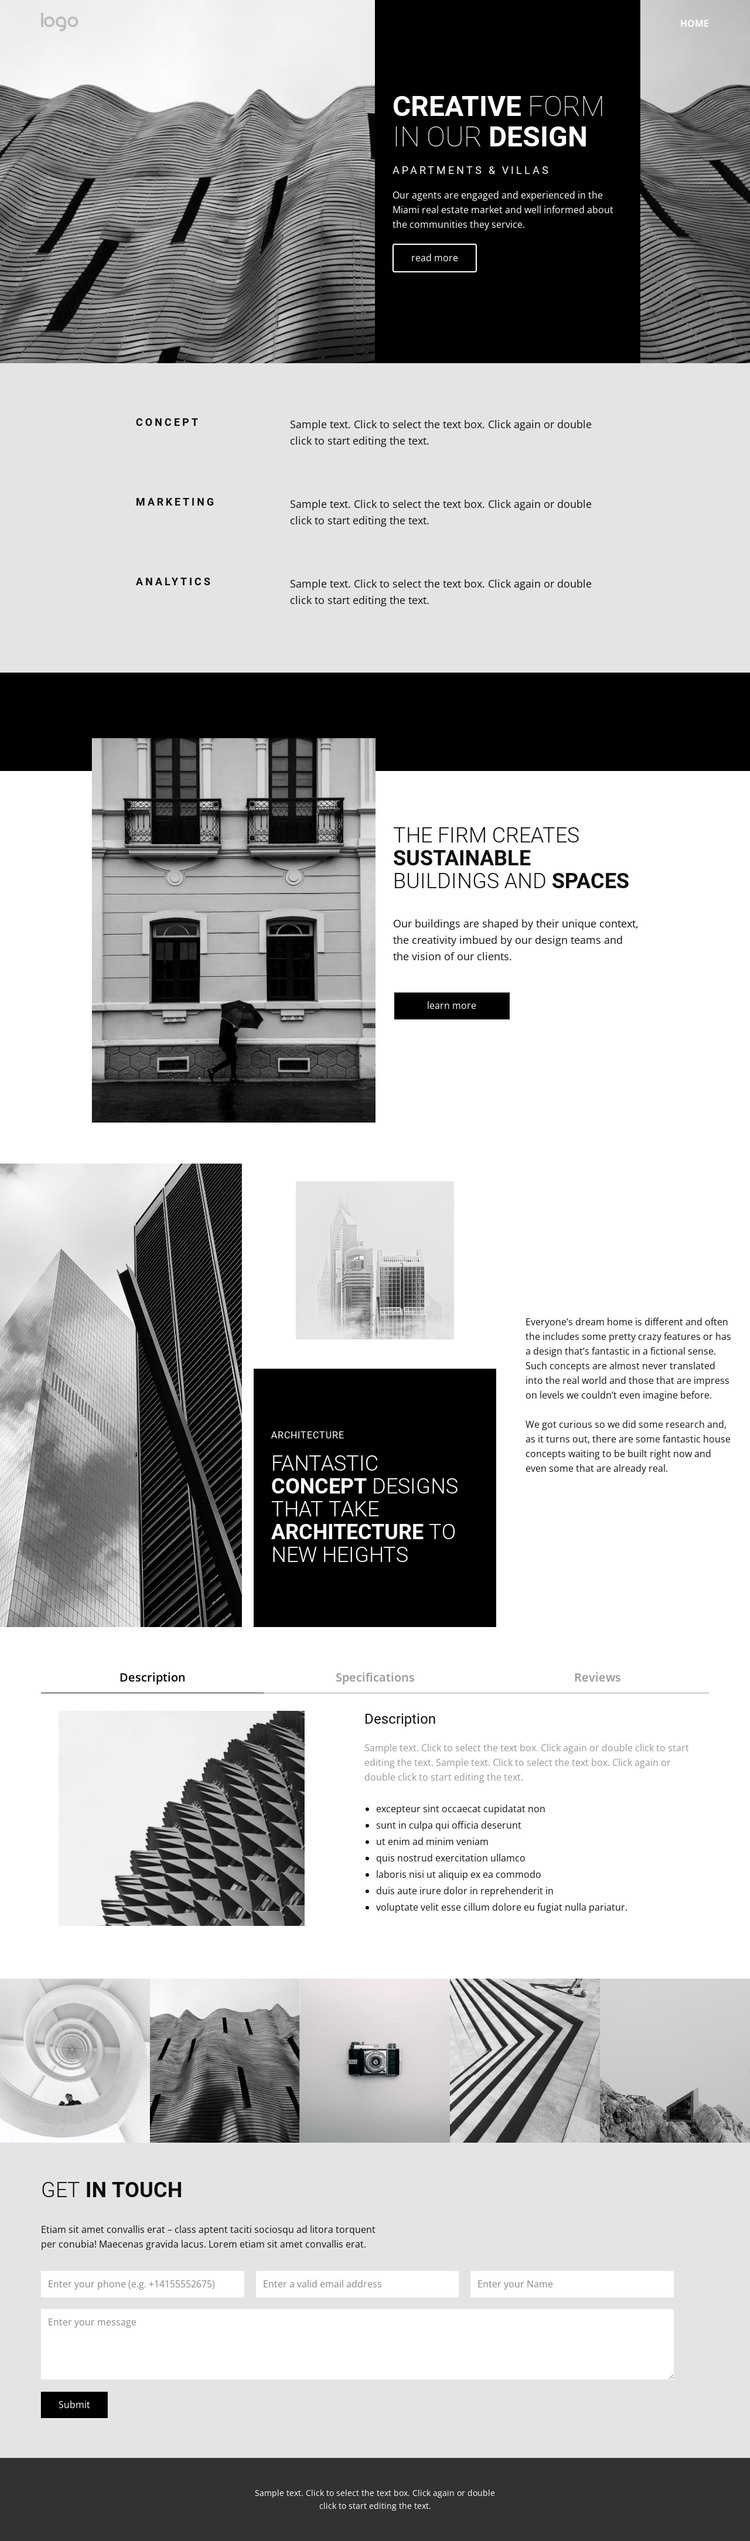 Creative concept architecture Web Design